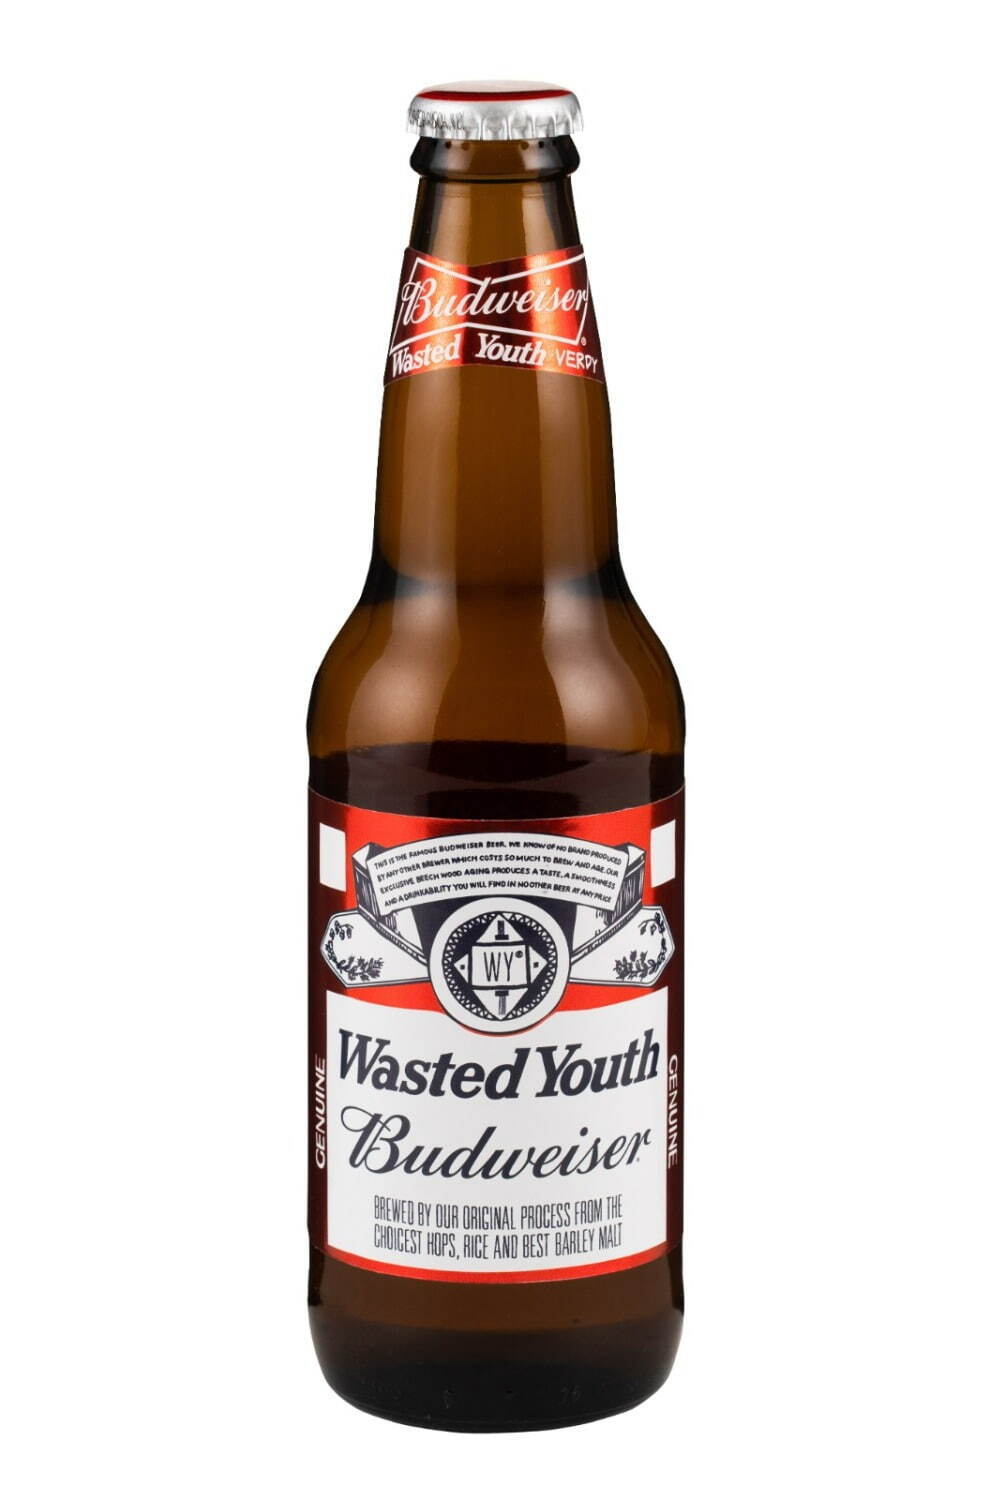 バドワイザー×ヴェルディ「ウェイステッド ユース」の缶ビール、コラボ